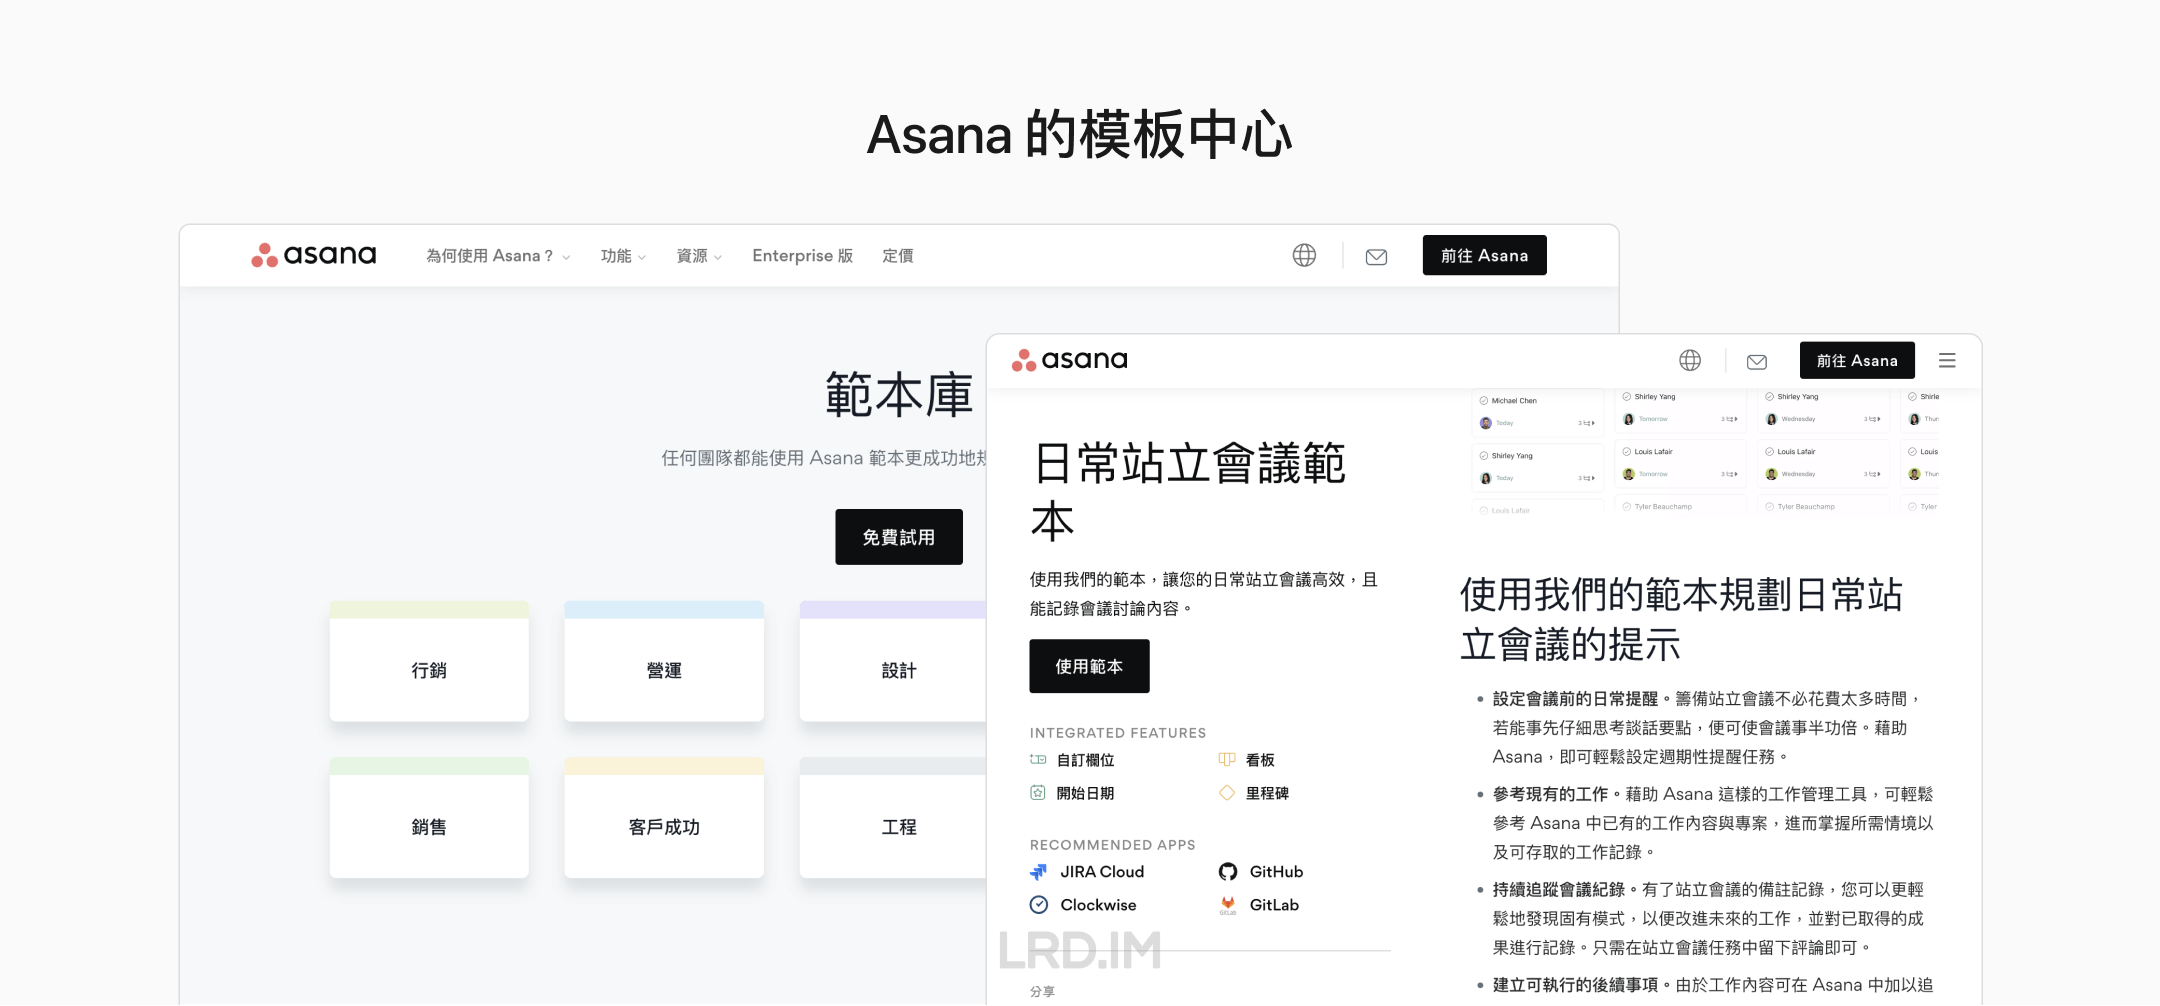 Asana 的模板中心，由前后两张繁体中文界面的截图组成。前一张截图是日常站立会议范本的模板详情和使用说明；后一张是范本库的首页，以网格的形式展示多个模板类型。